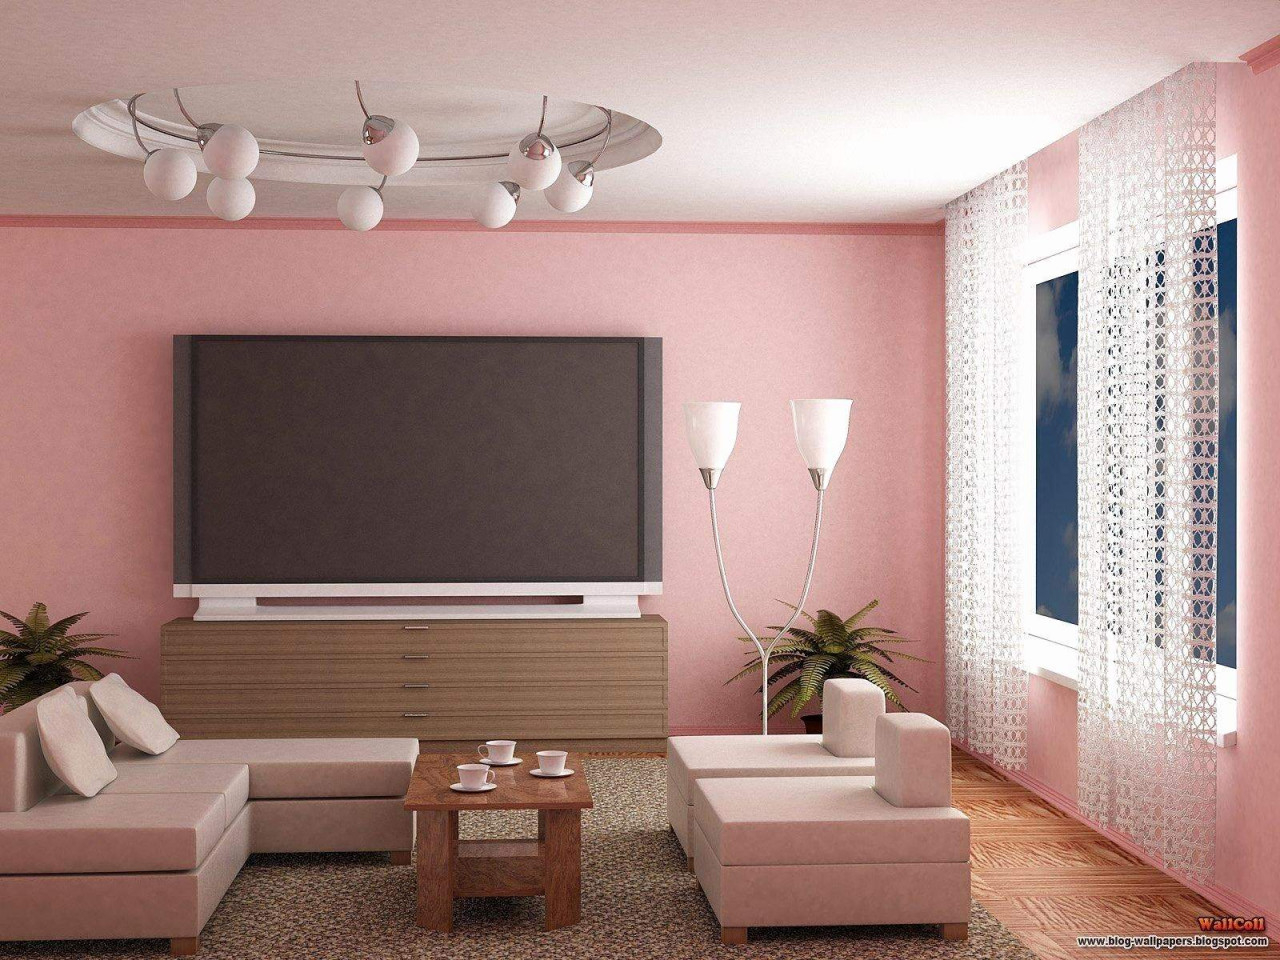 29 Genial Wohnzimmer Ideen Wandgestaltung Stein Das Beste von Wohnzimmer Wandgestaltung Bilder Photo